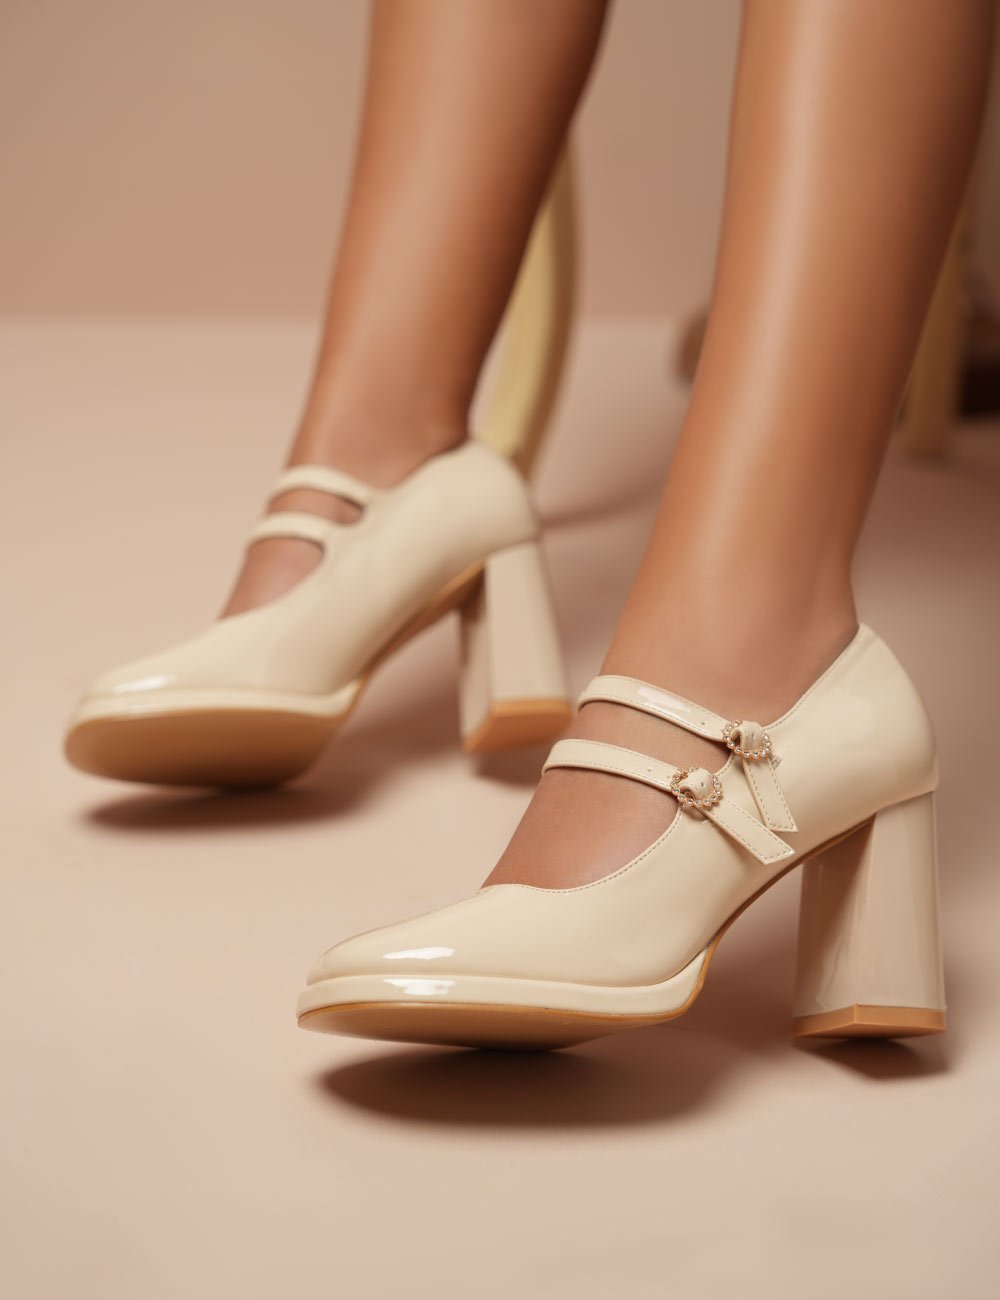 Chaussures Joliesse - La tentation est doublée chez #Joliesse  #newcollection #Joliesse #chaussure #femme #chic #fashionnova #style #2020